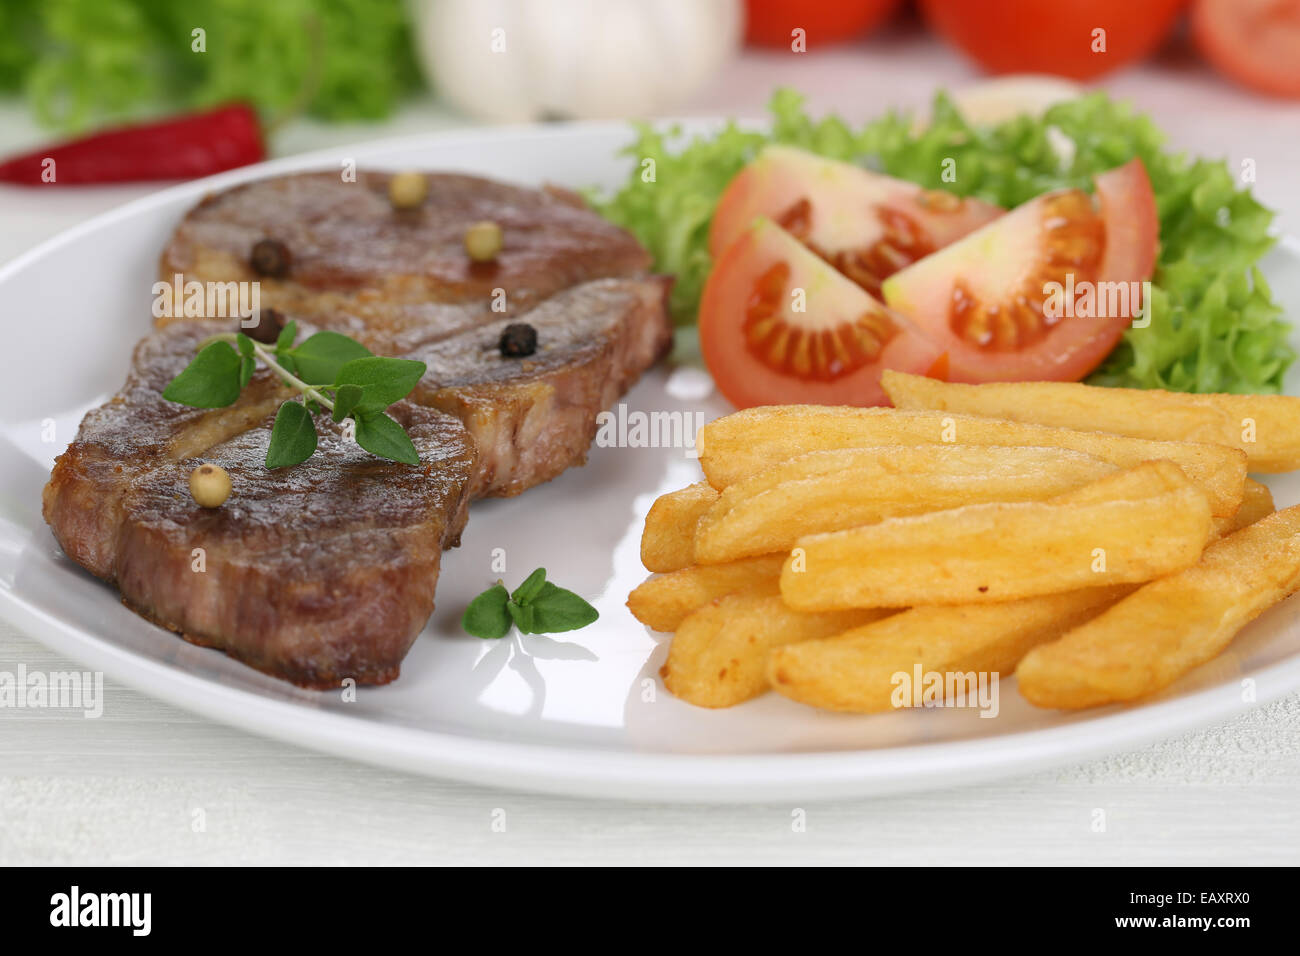 Steak de porc escalope de viande avec des frites, des légumes et de la laitue sur la plaque Banque D'Images